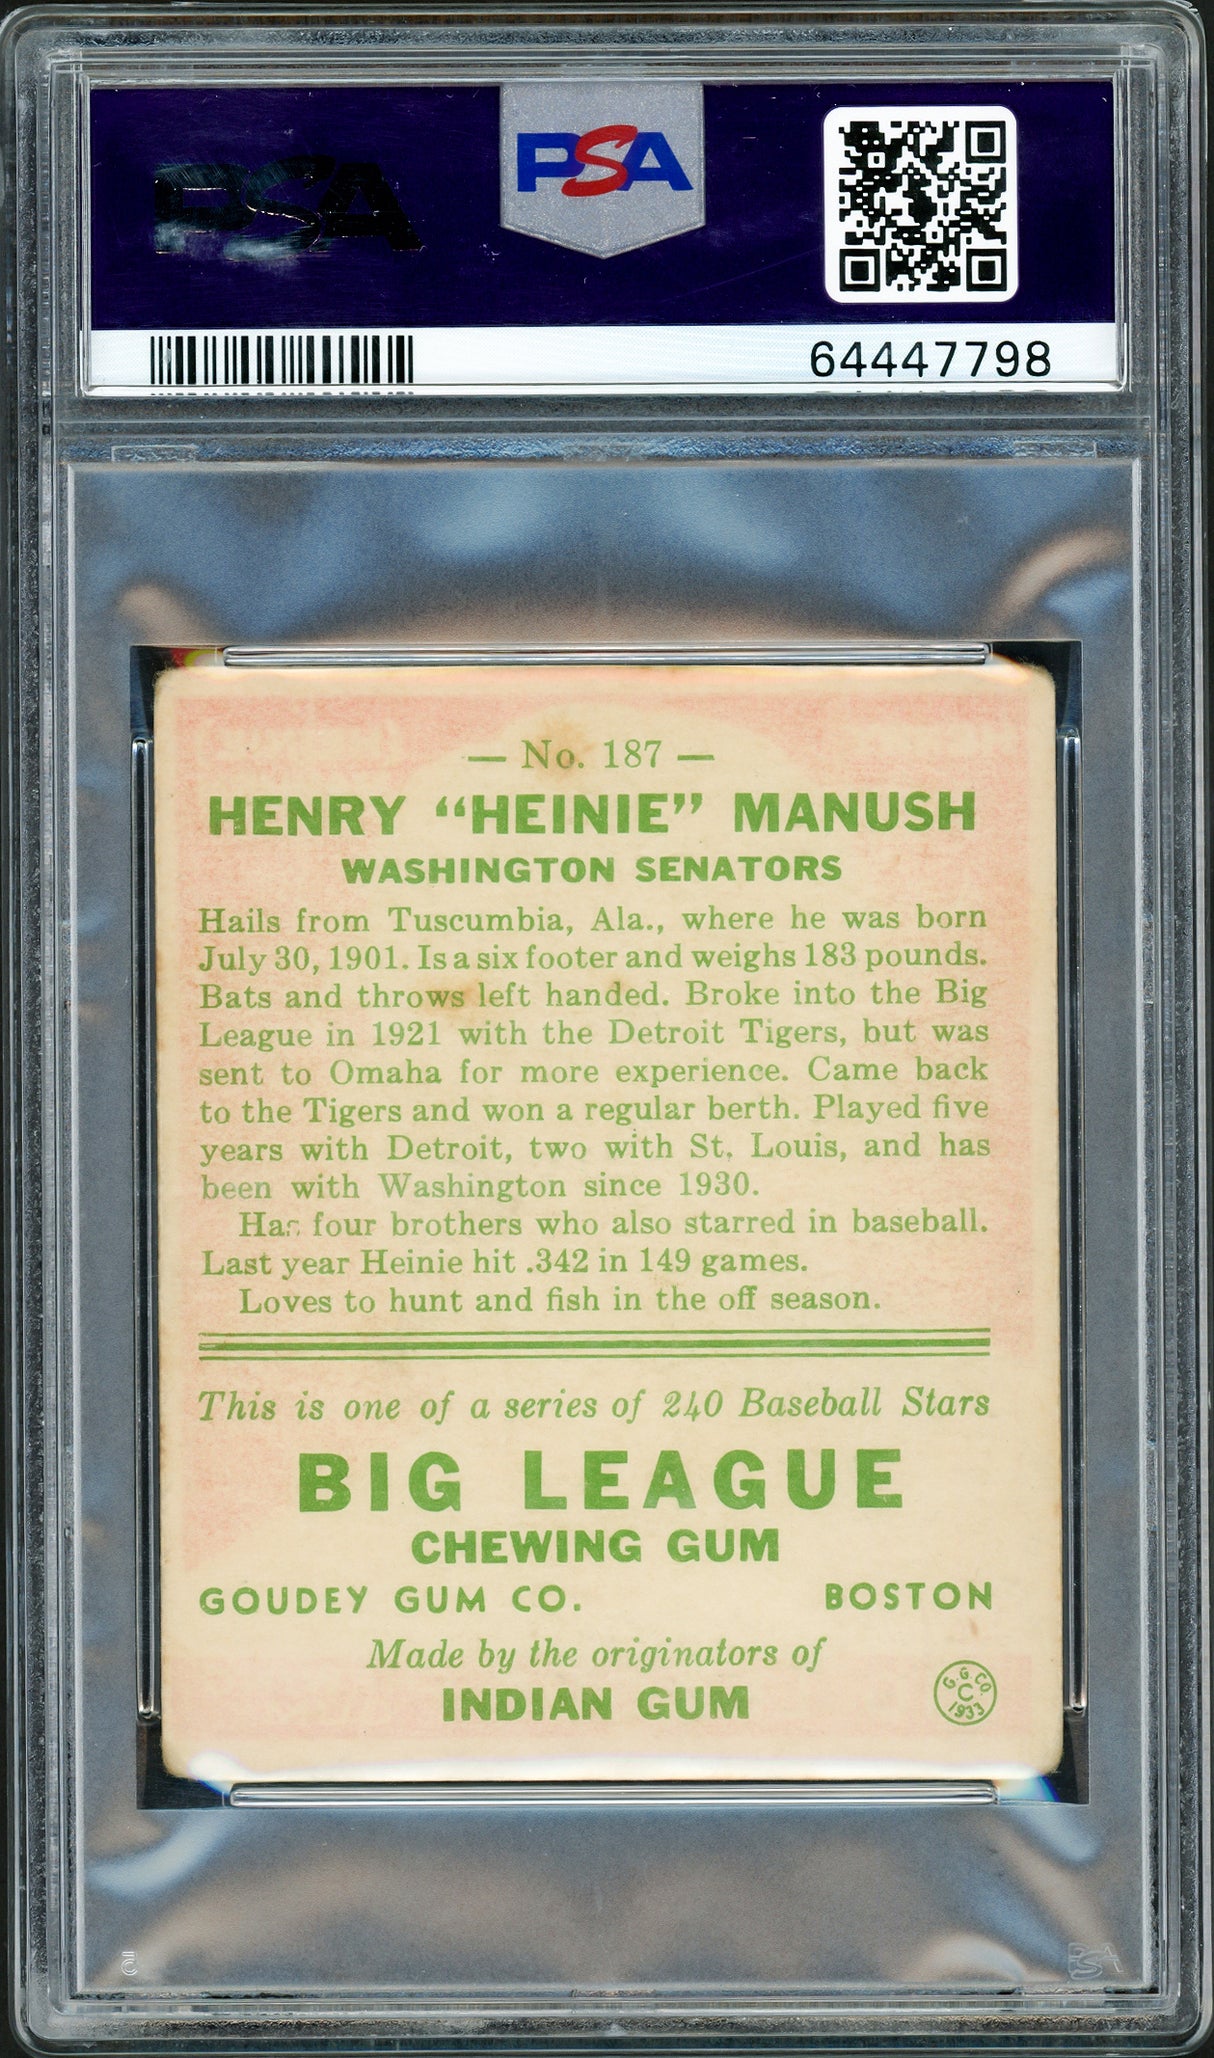 Heinie Manush Autographed 1933 Goudey Rookie Card #187 Washington Senators PSA 2 Auto Grade Mint 9 PSA/DNA #64447798